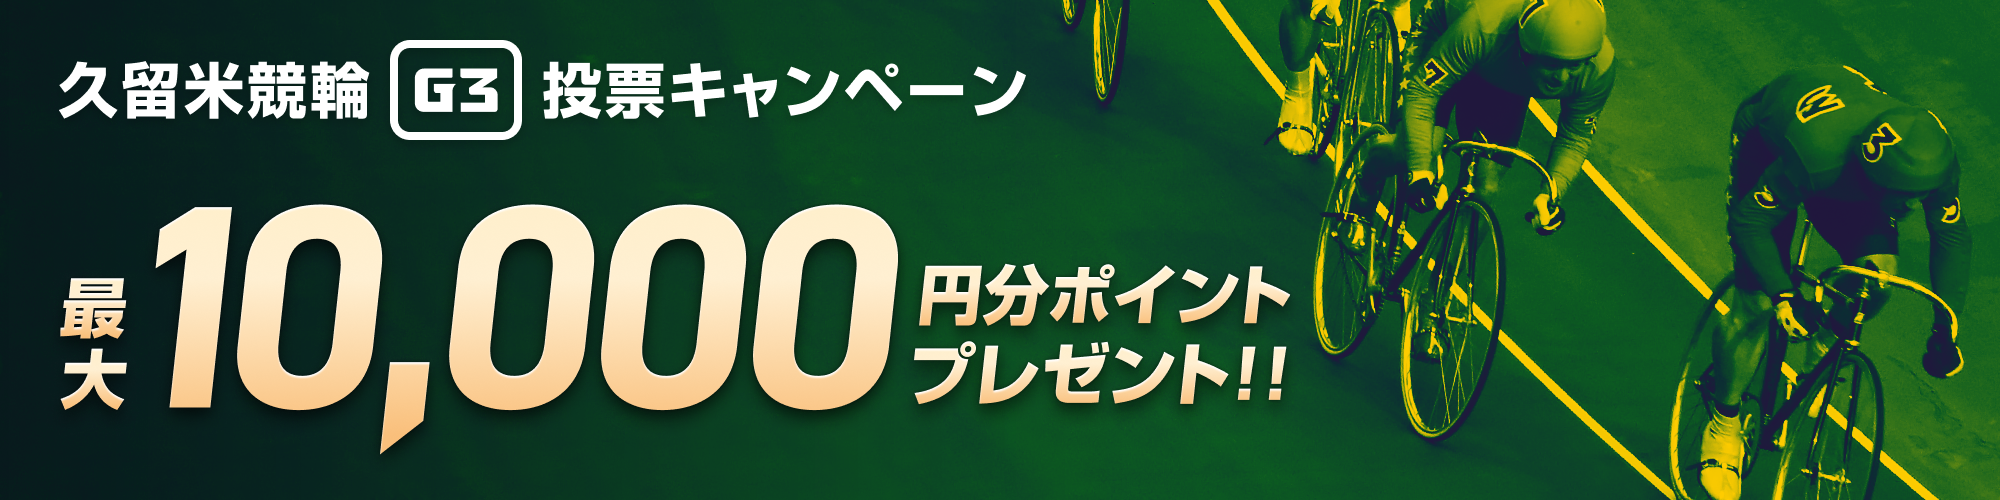 【最大1万円分】久留米競輪 中野カップレース（G3）投票キャンペーン